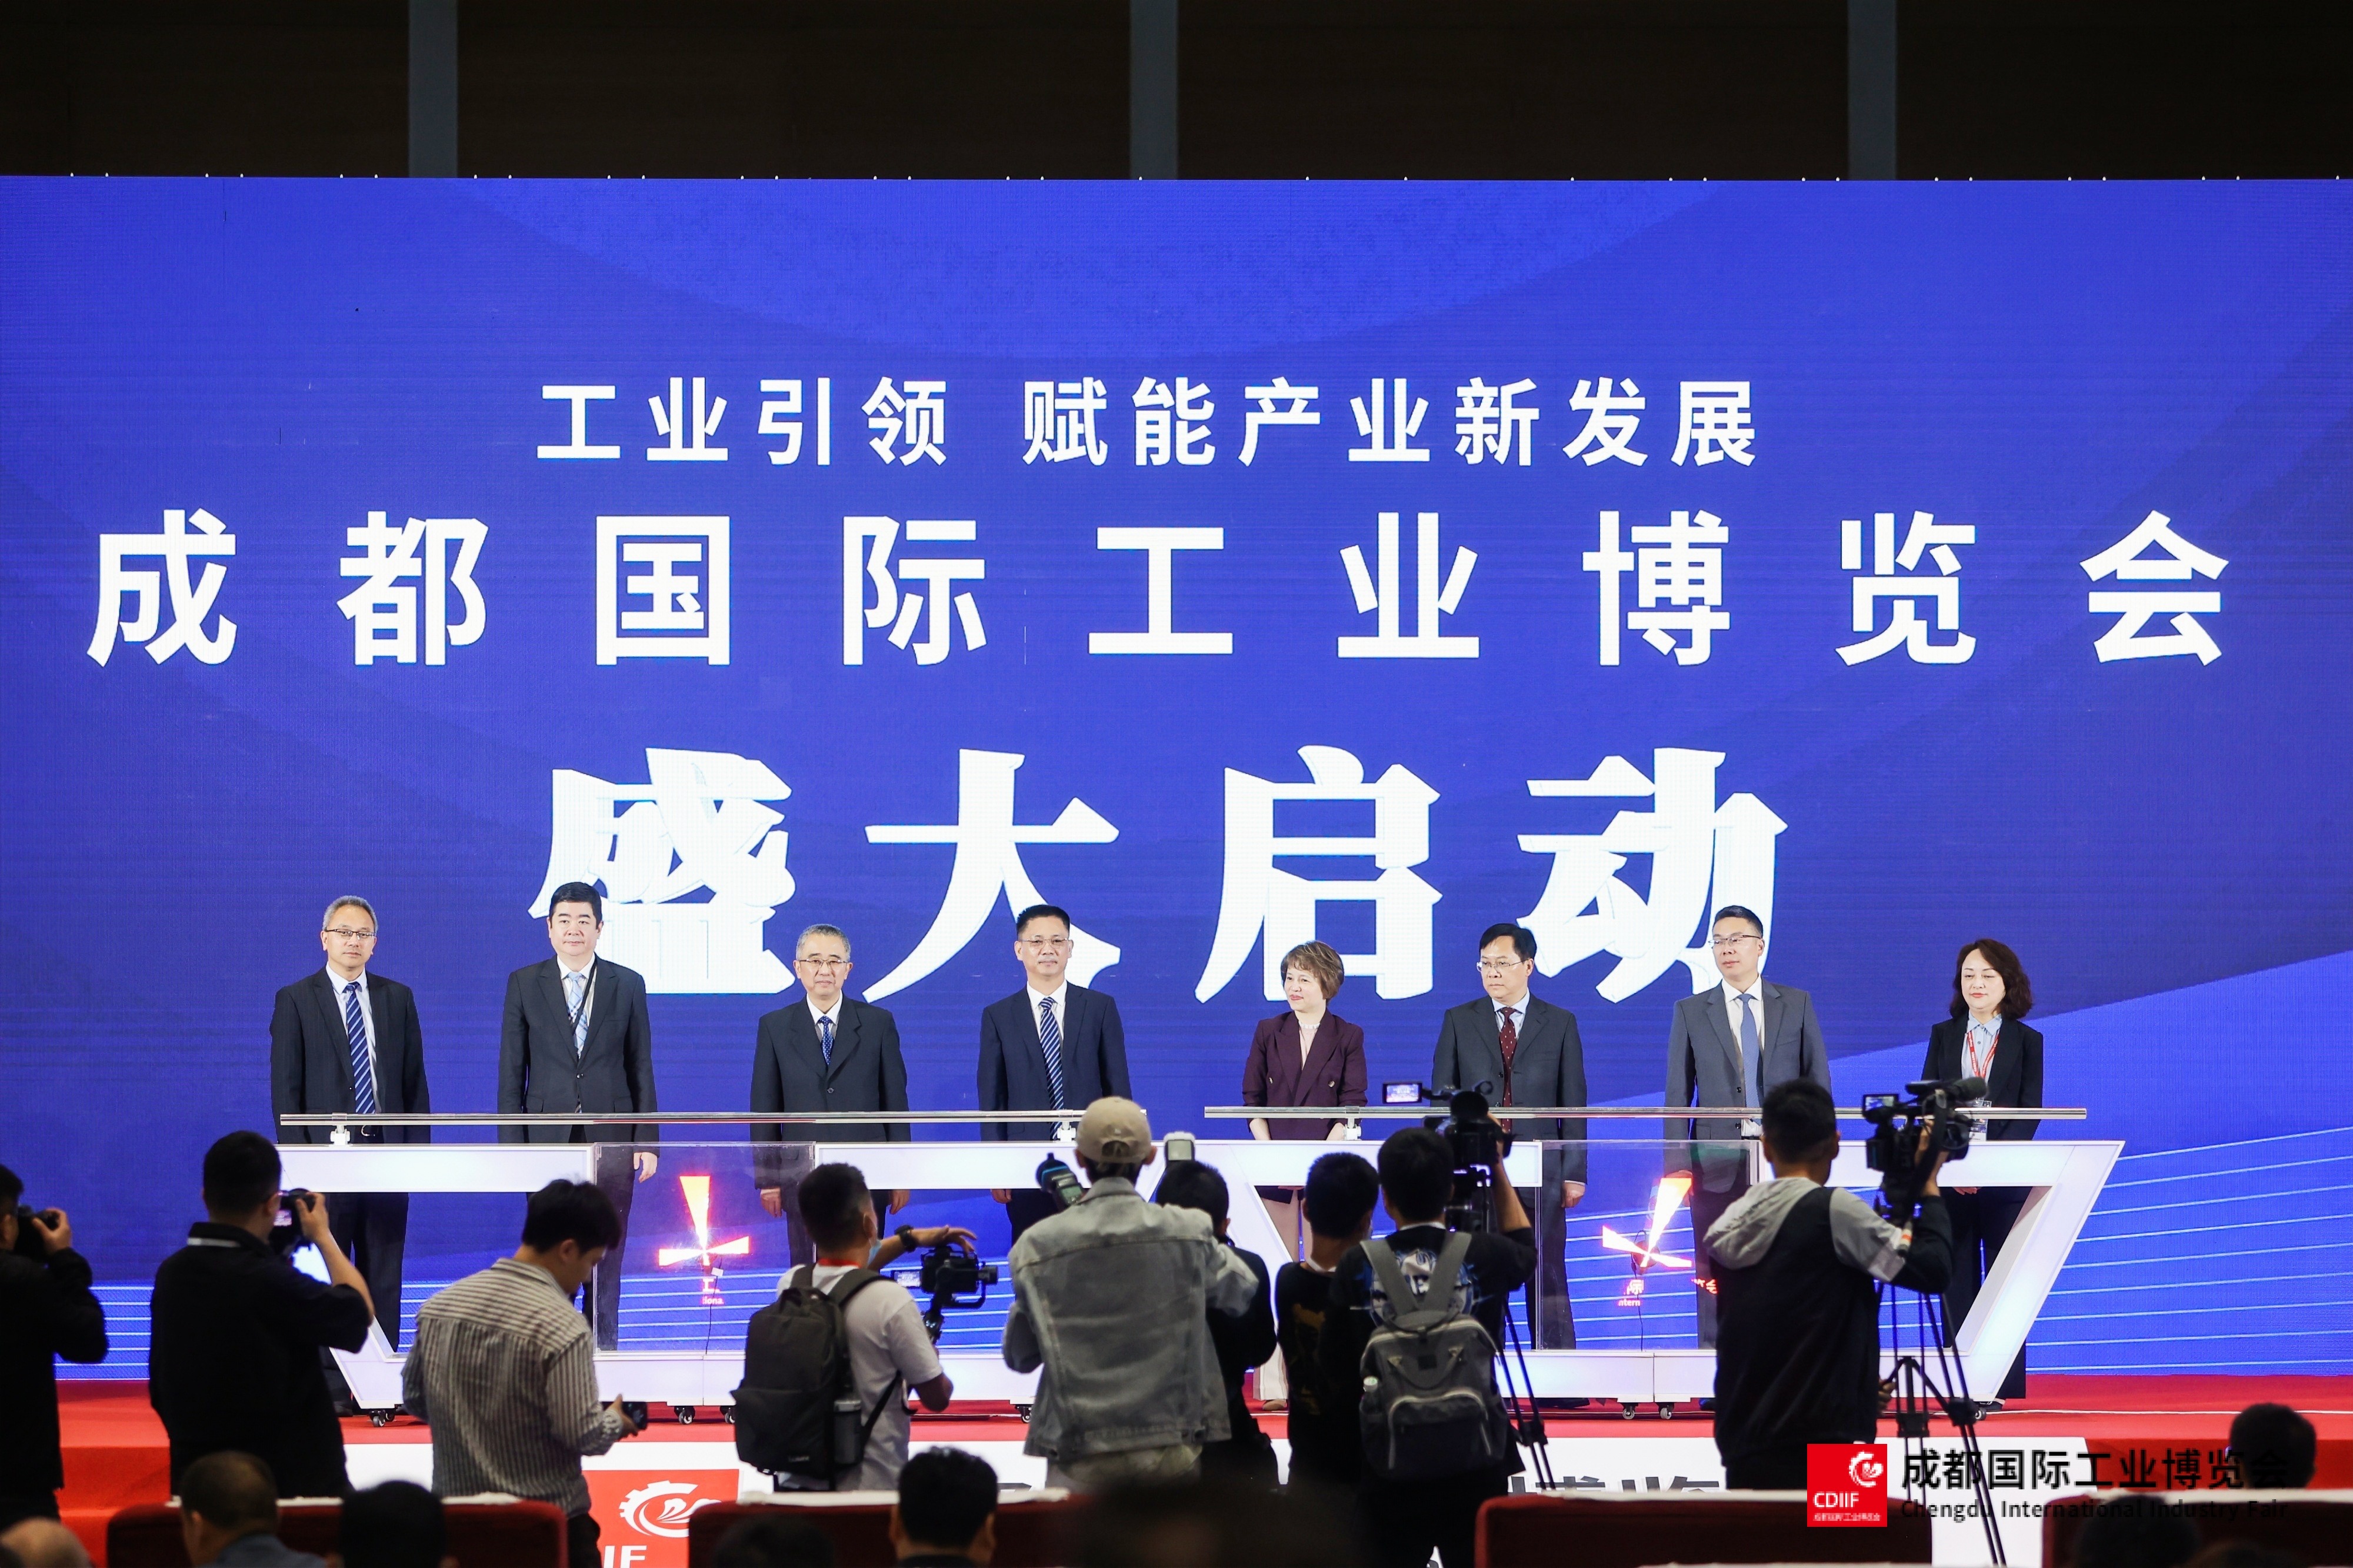 第二屆成都國際工業博覽會在蓉開幕